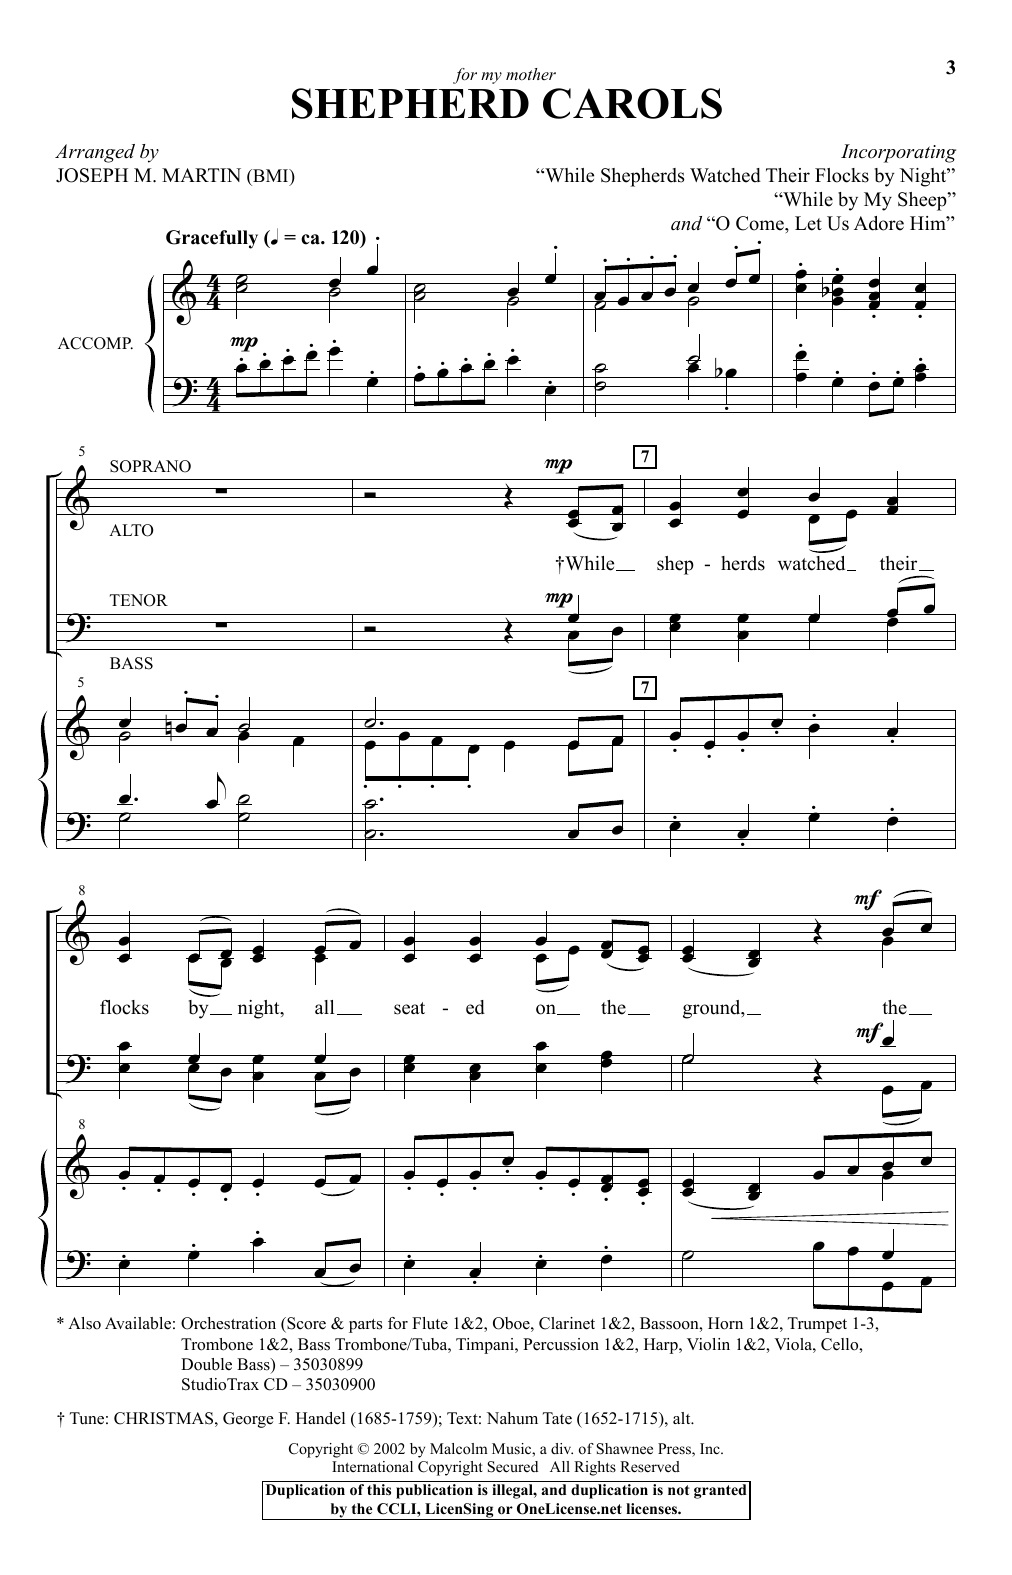 Joseph M. Martin Shepherd Carols Sheet Music Notes & Chords for SATB - Download or Print PDF